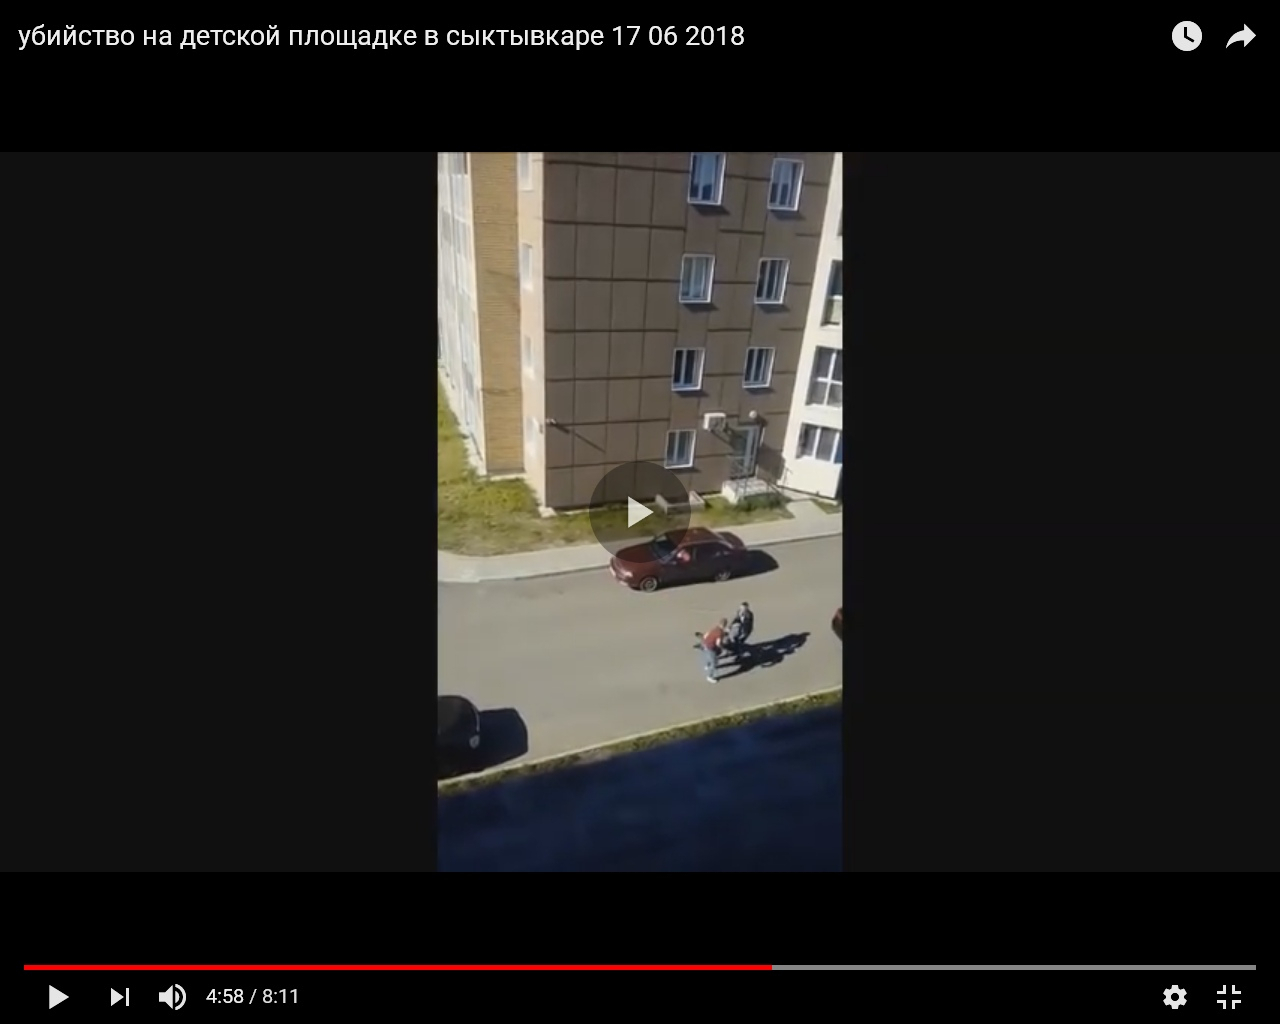 В убийстве парня на детской площадке в Сыктывкаре подозревают 16-летнего подростка